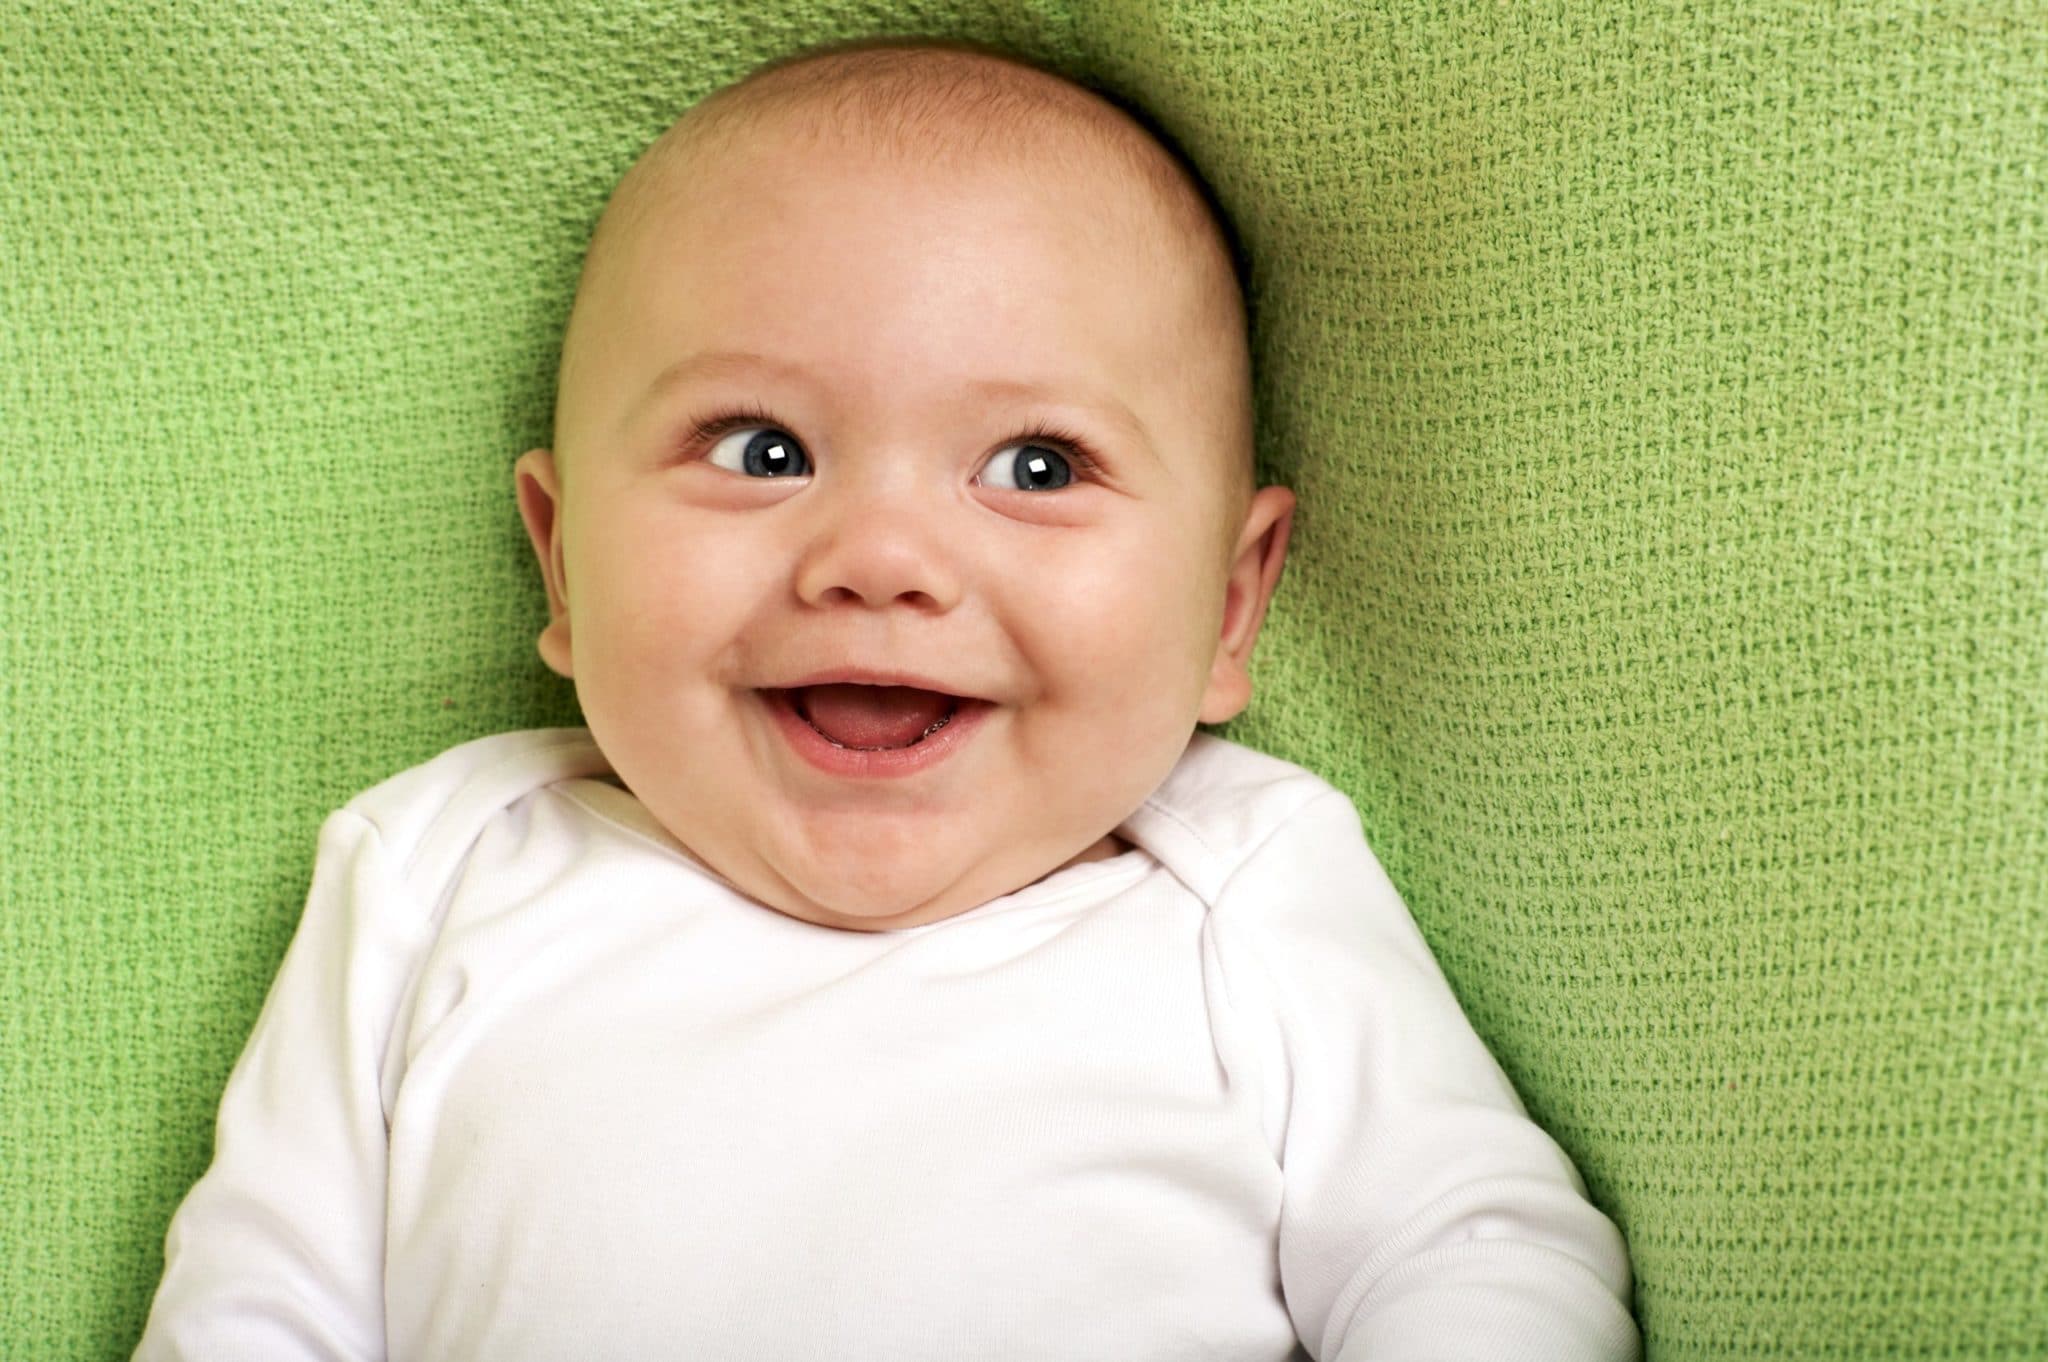 bébé souriant sur une couverture verte